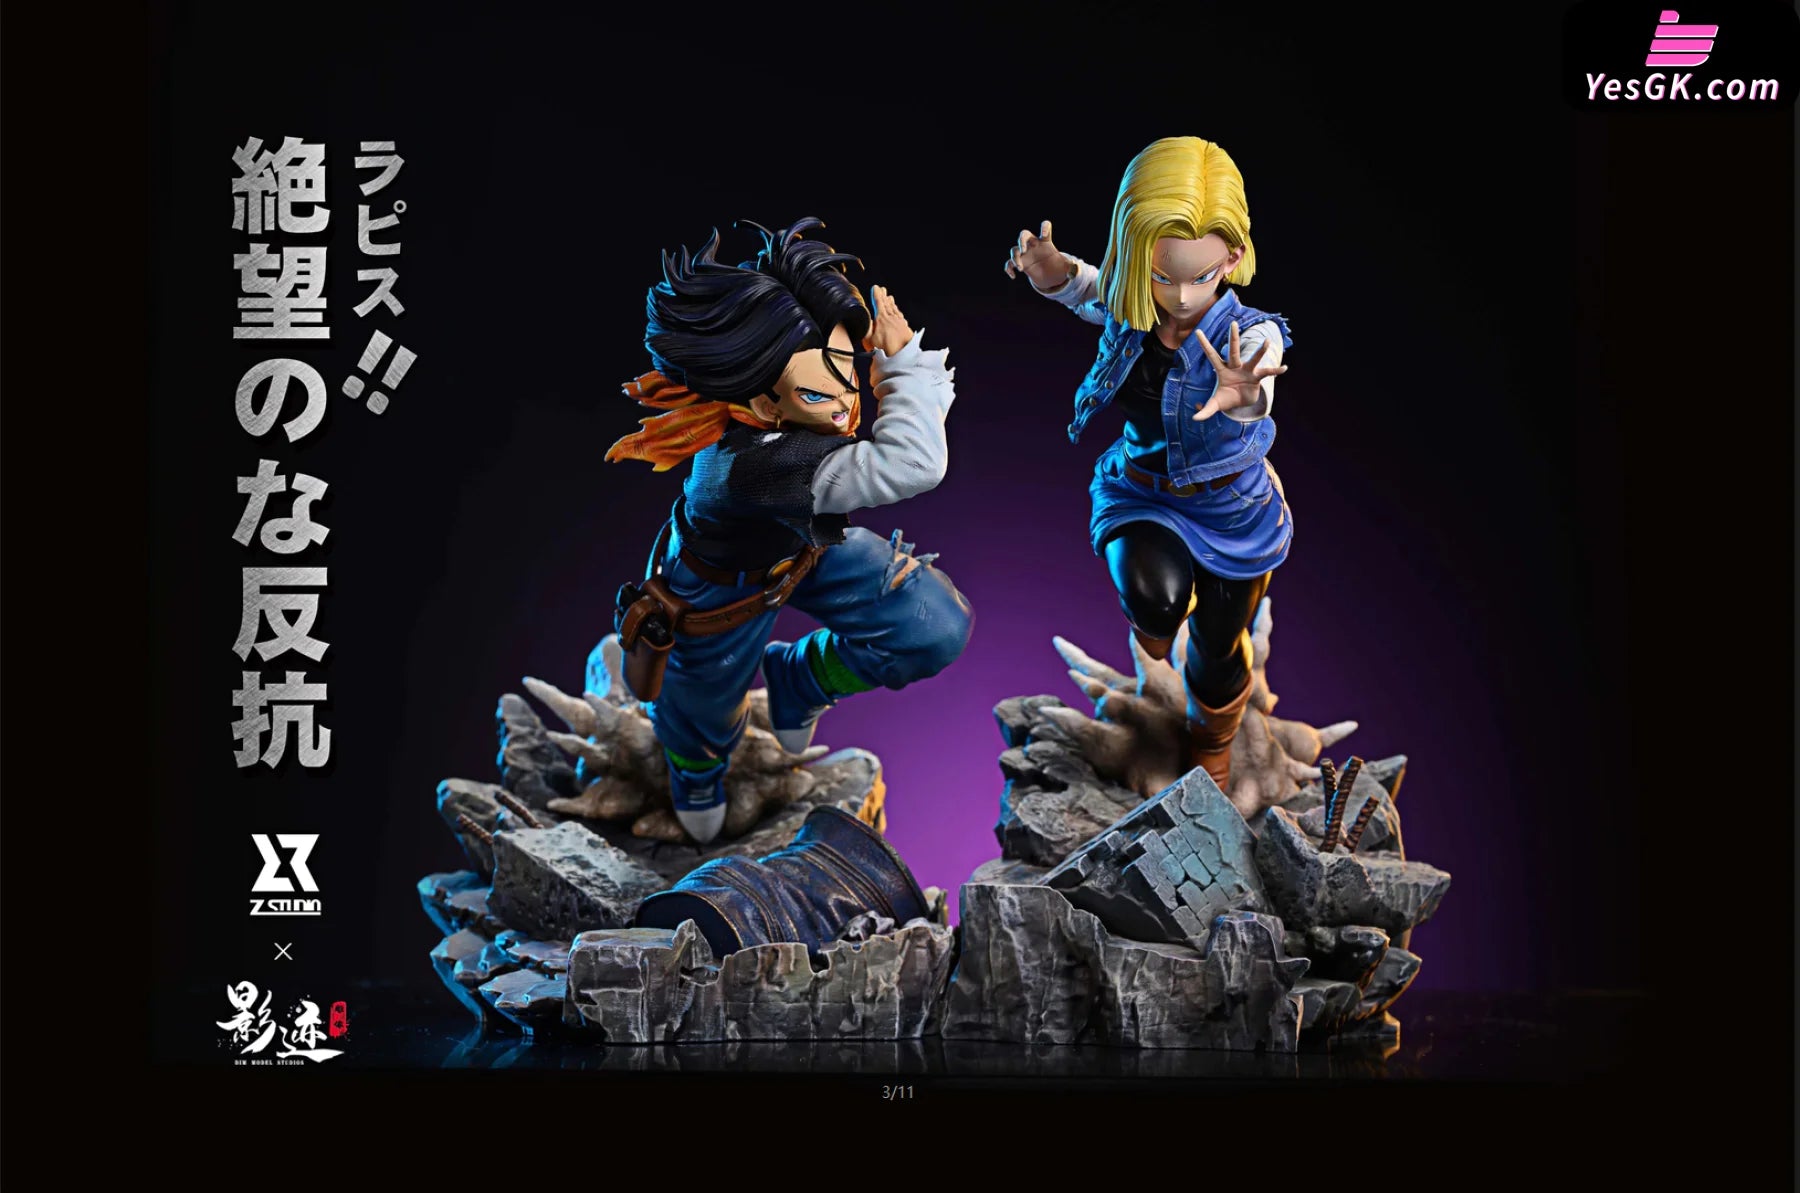 Dragon Ball Future Battle Android 18 Resin Statue - Z Studio & Dim Model [Pre-Order]